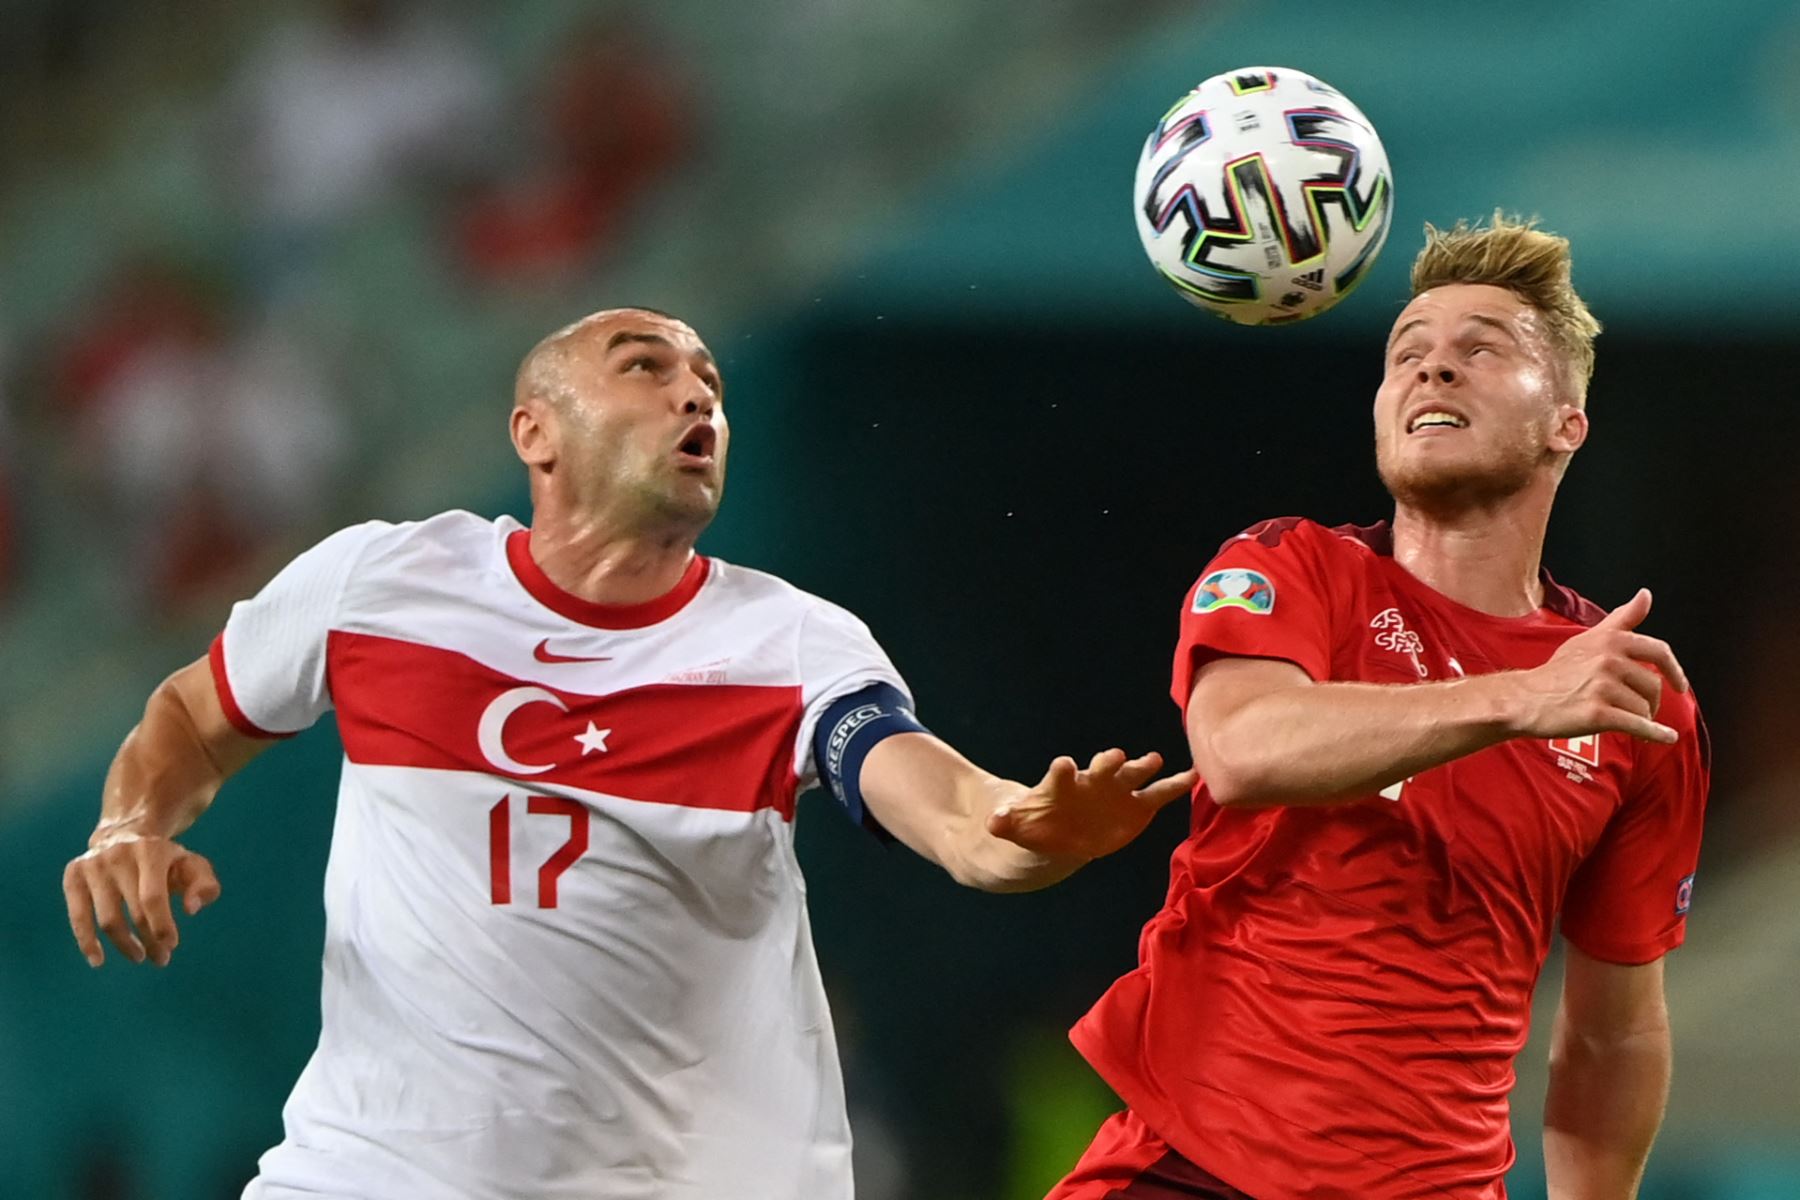 El delantero de Turquía Burak Yilmaz (L) y el defensor de Suiza Nico Elvedi compiten por el balón durante el partido de fútbol del Grupo A de la UEFA EURO 2020 entre Suiza y Turquía en el Estadio Olímpico de Bakú, capital de Azerbaiyán. Foto: AFP